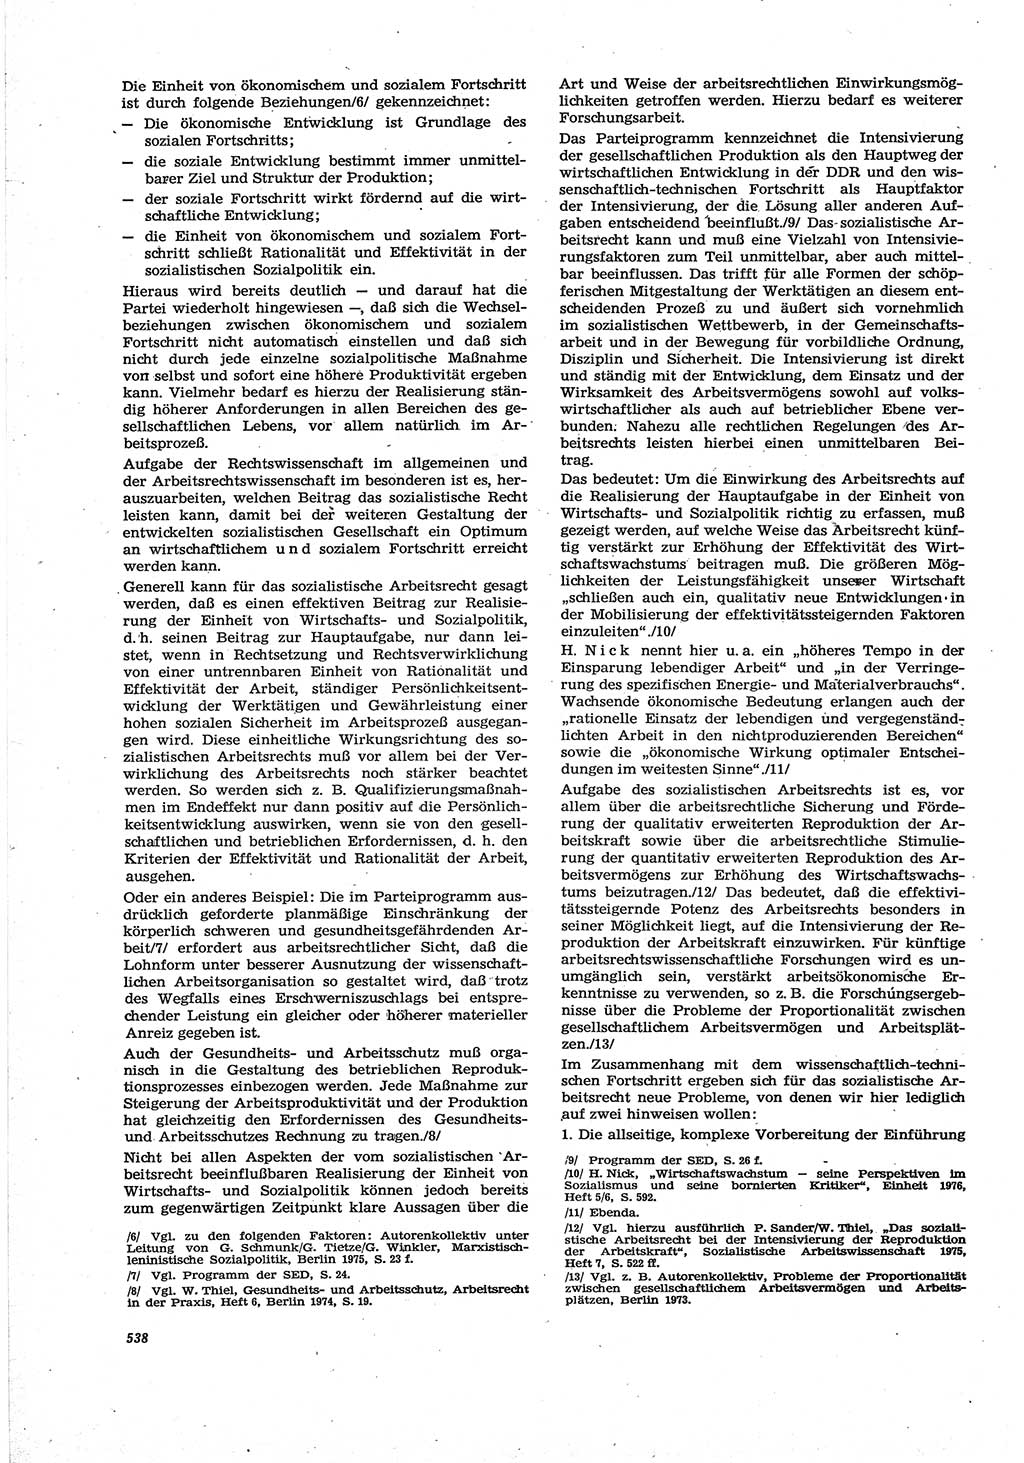 Neue Justiz (NJ), Zeitschrift für Recht und Rechtswissenschaft [Deutsche Demokratische Republik (DDR)], 30. Jahrgang 1976, Seite 538 (NJ DDR 1976, S. 538)